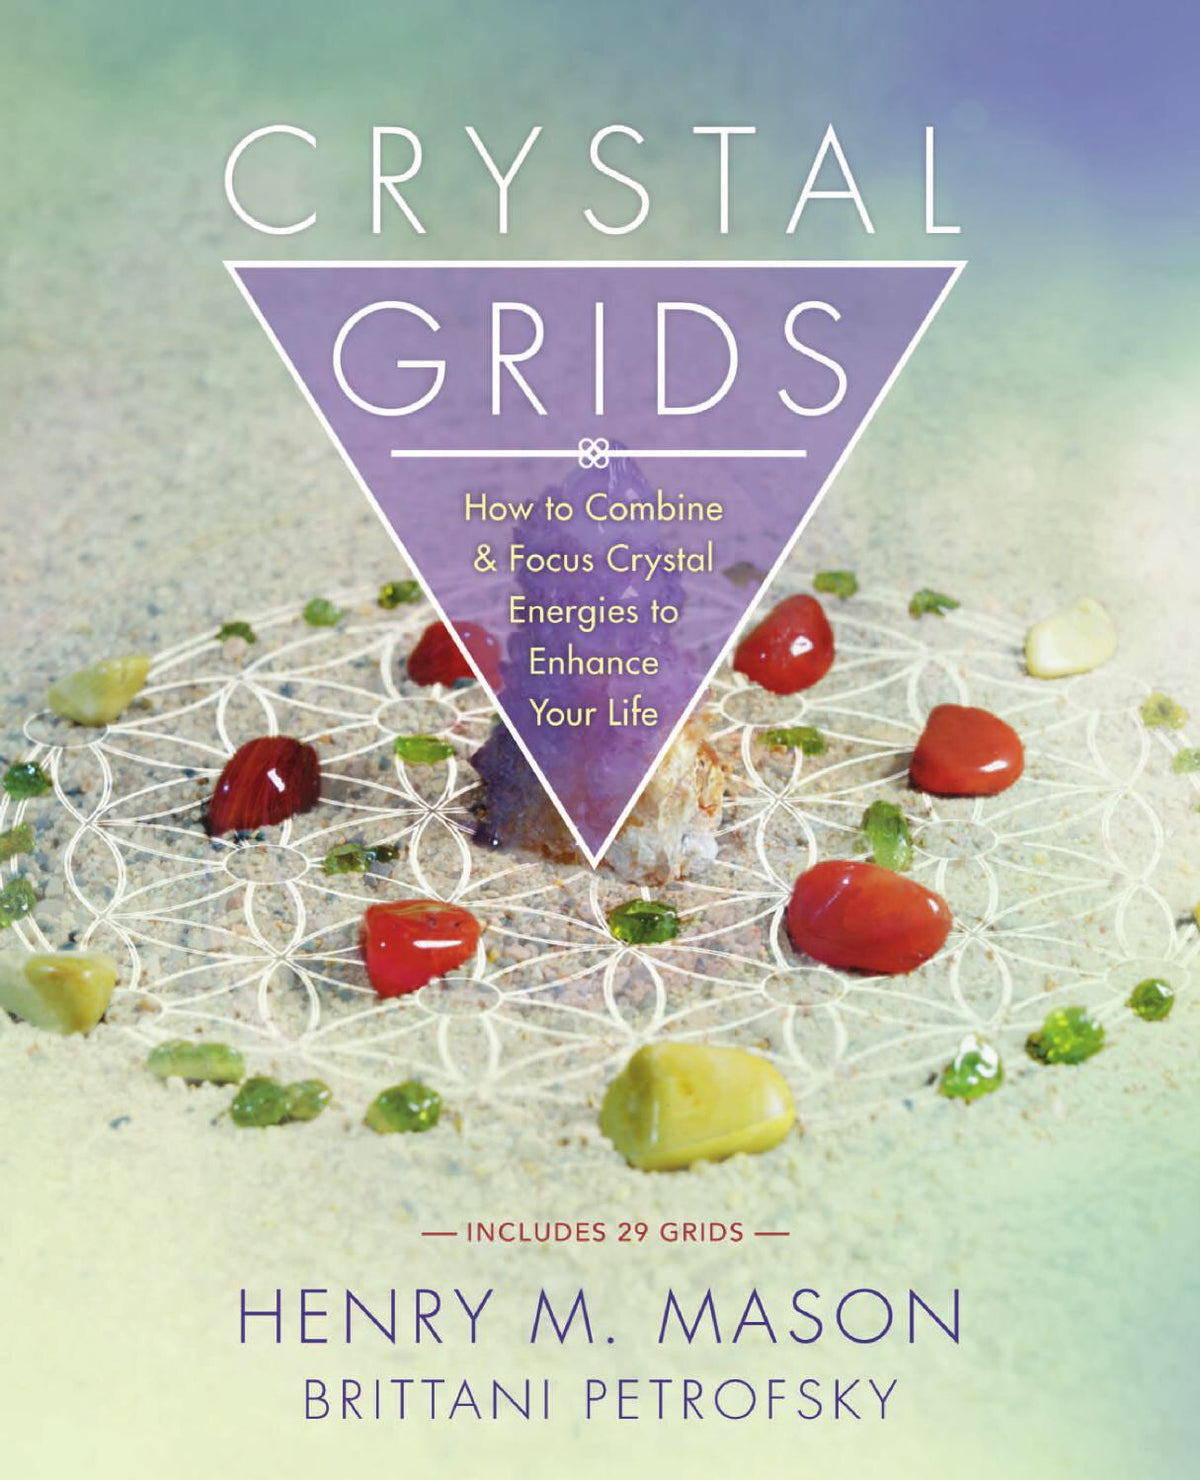 Crystal Grids by Henry M. Mason &amp; Brittani Petrofsky - Cast a Stone